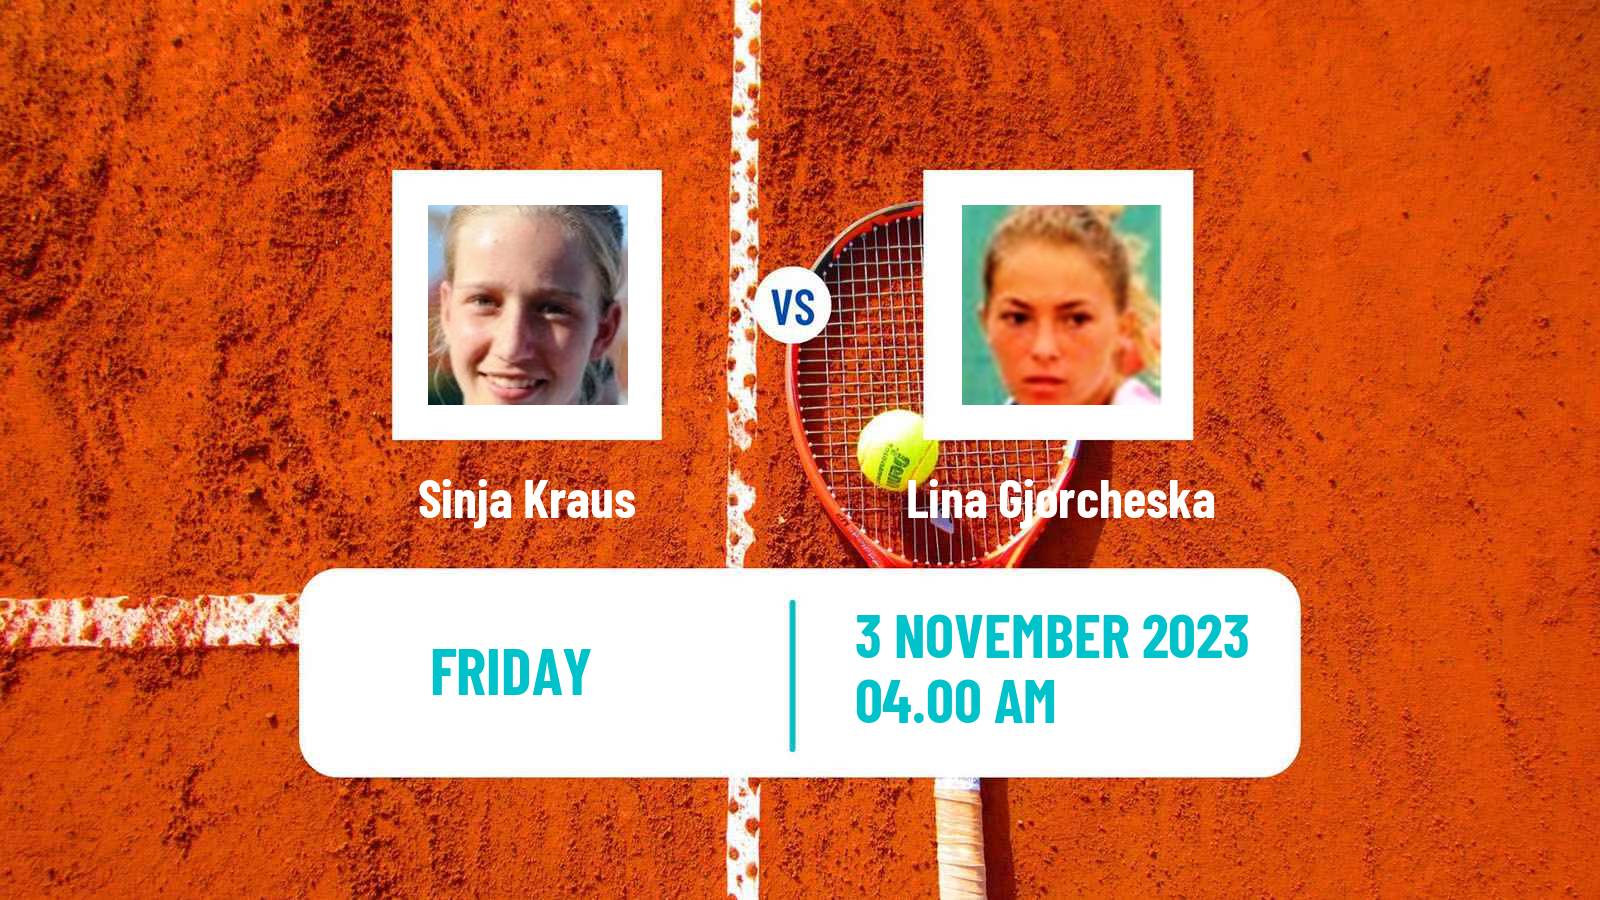 Tennis ITF W40 Heraklion Women Sinja Kraus - Lina Gjorcheska